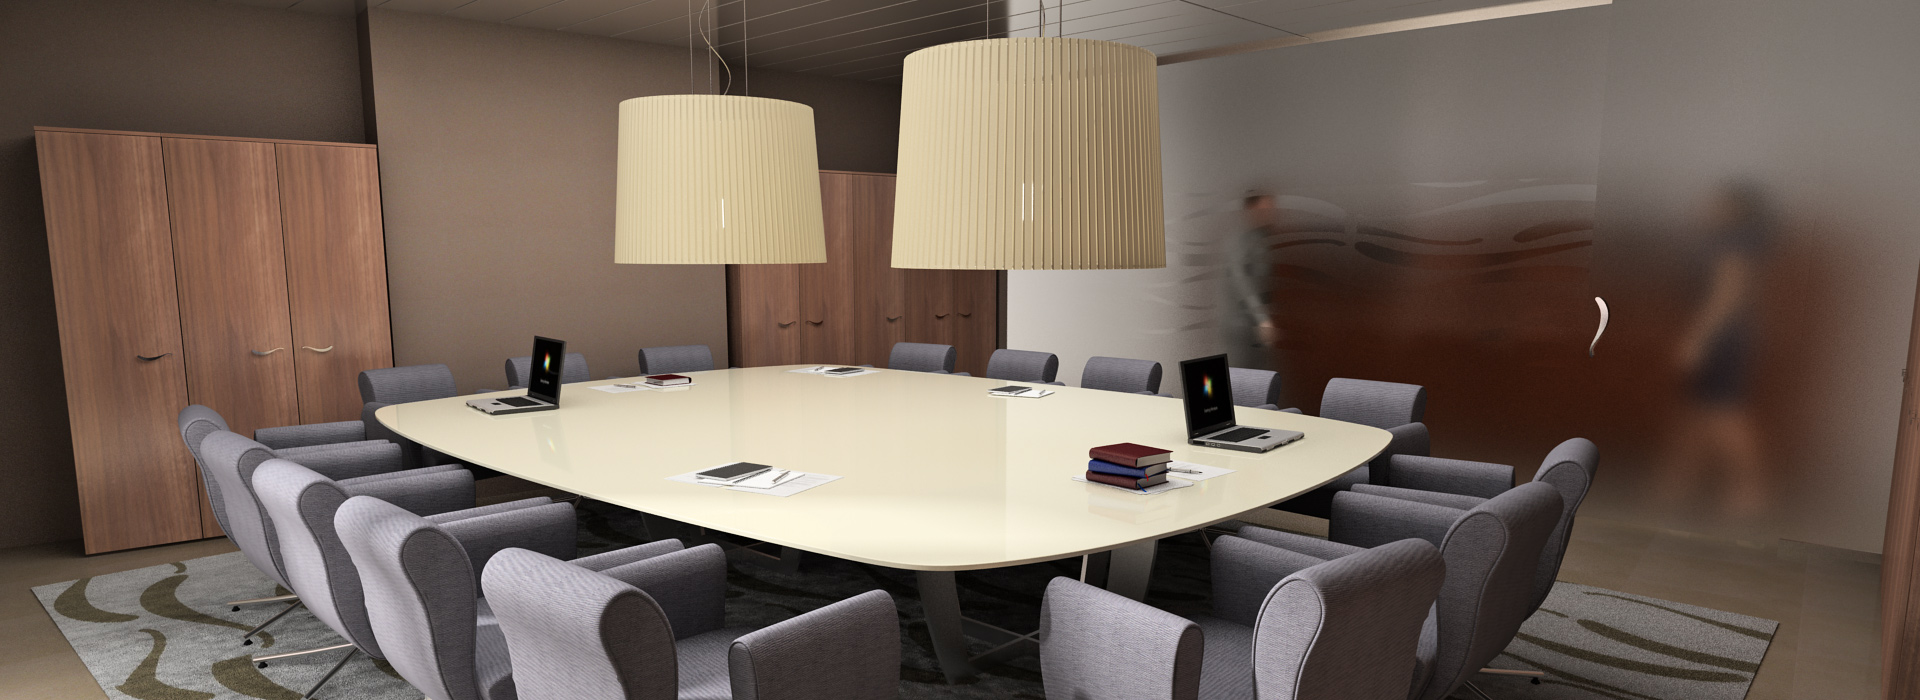 HCSdesign Corporate Interior Design